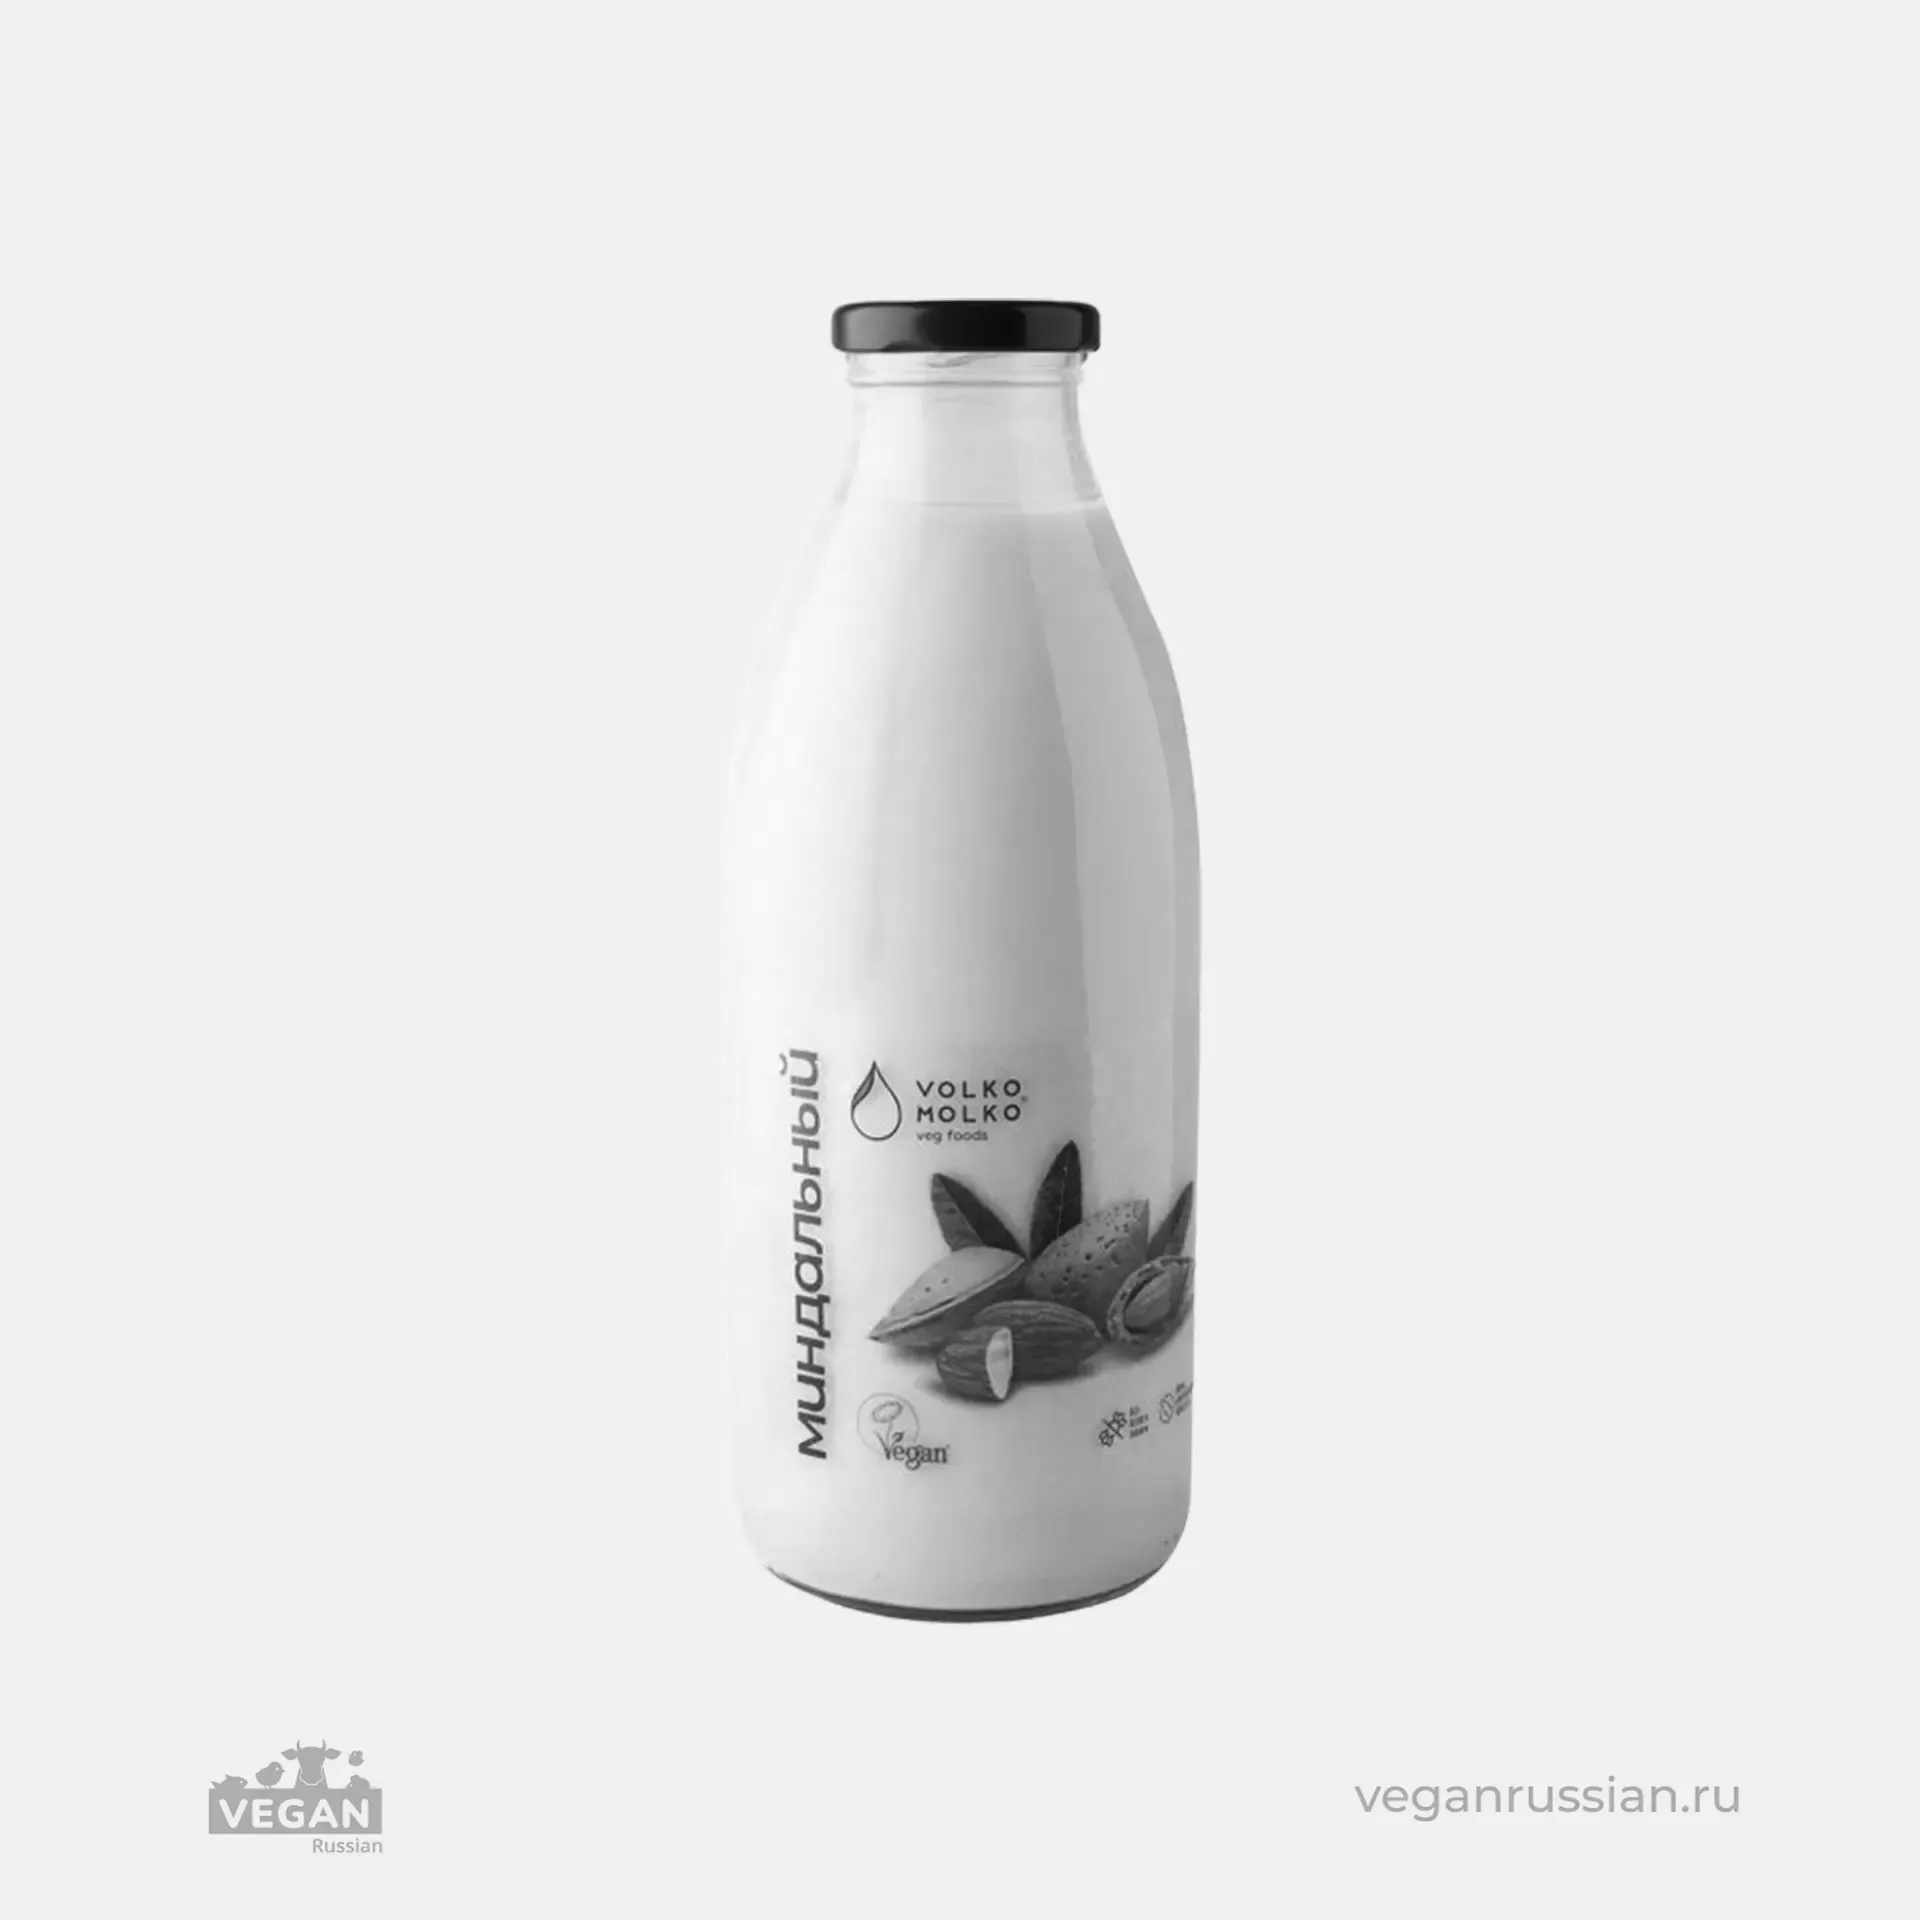 Архив: Молоко миндальное VolkoMolko 0,3-0,75 л